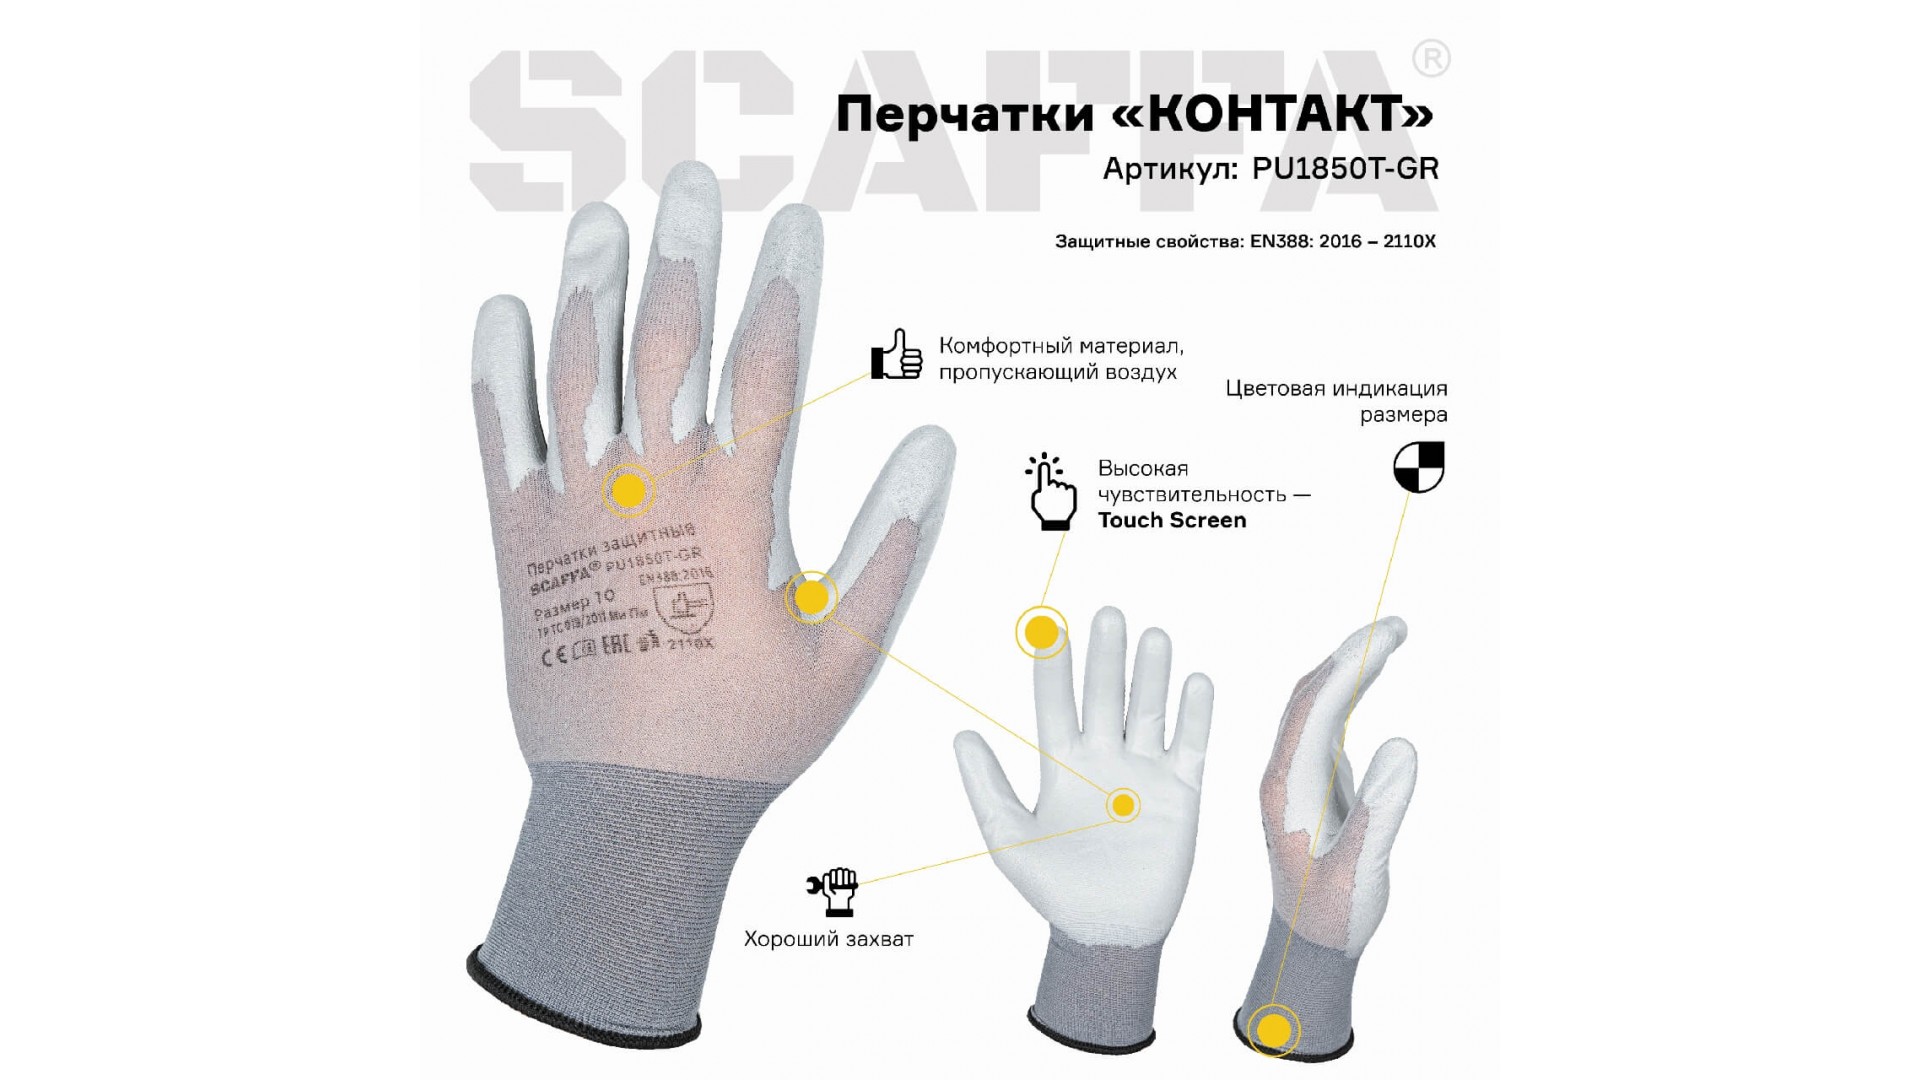 Перчатки КОНТАКТ для защиты от ОПЗ